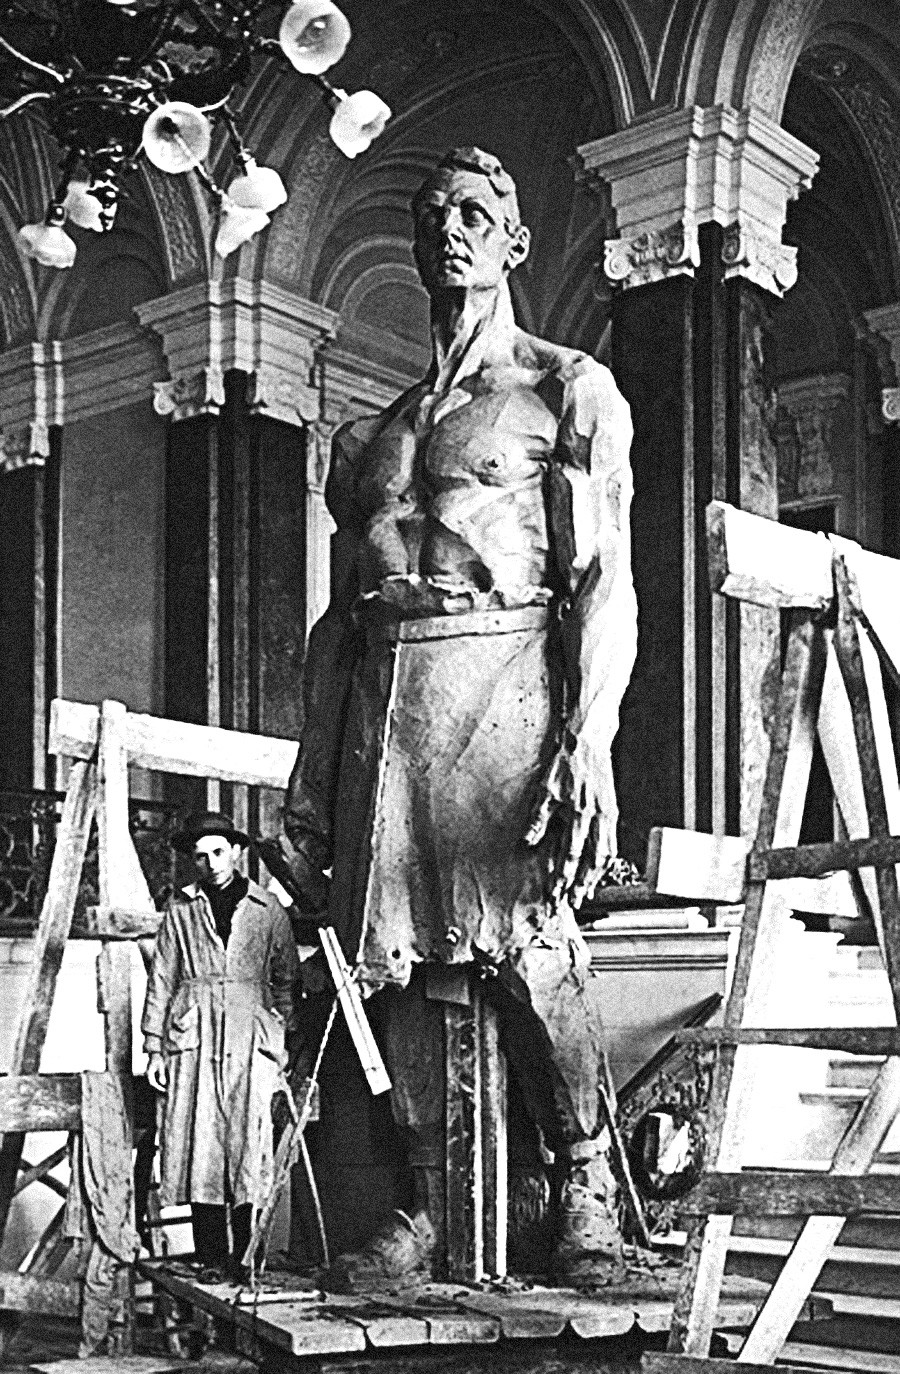 Der russische Bildhauer Michail Bloch lieferte der Revolutions- und Arbeiterpropaganda so bedeutende Werke wie den “Großen Metallarbeiter” (Foto). Dennoch wurde er 1920 wegen angeblicher Spionage für Polen hingerichtet.